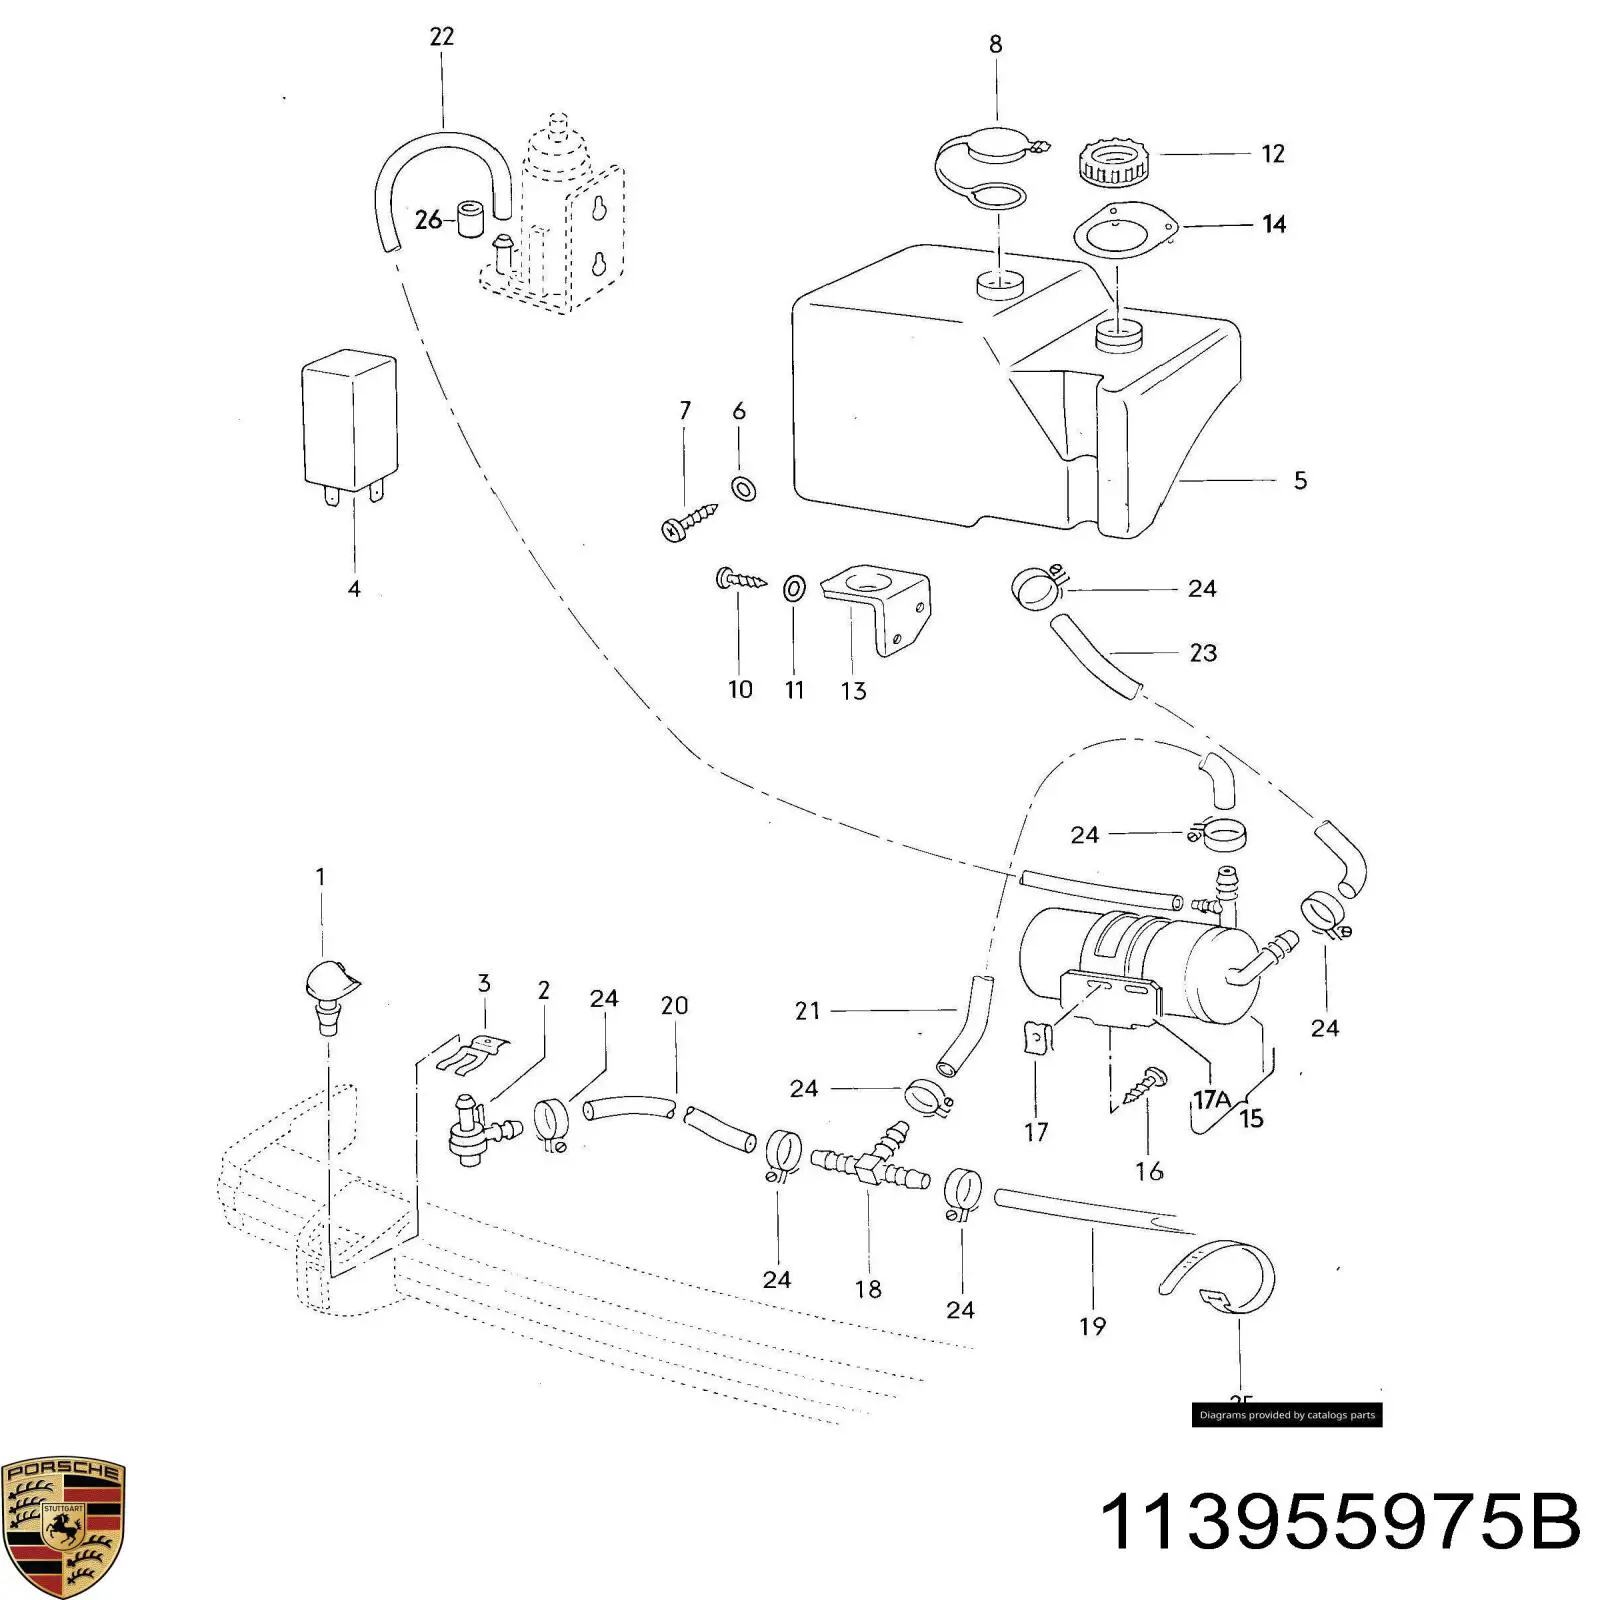 T de la sistema de lavado del parabrisas para Audi 80 (81, 85, B2)